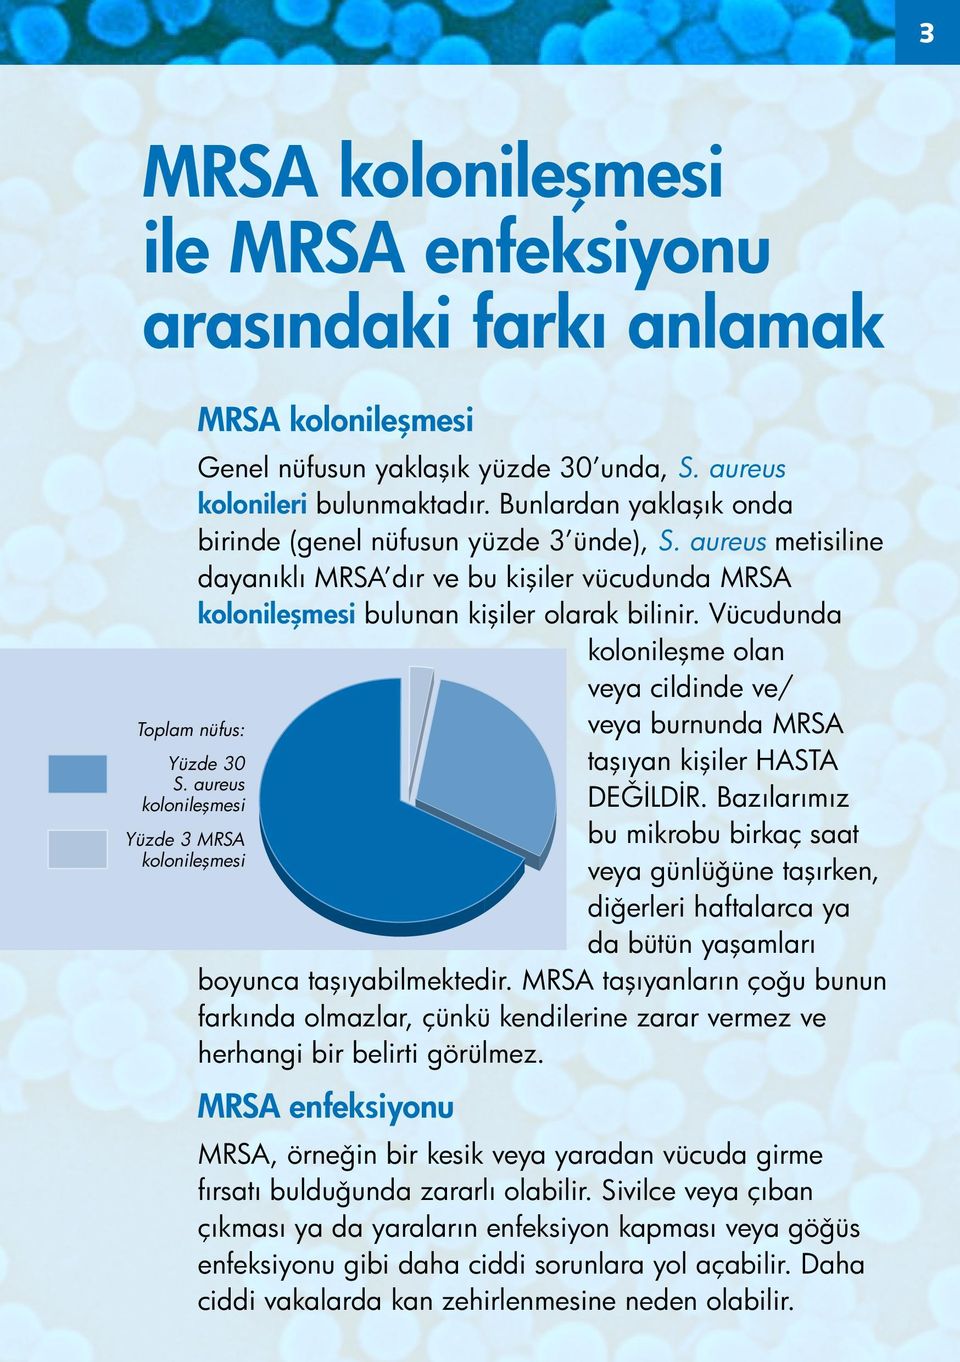 aureus metisiline dayanıklı MRSA dır ve bu kişiler vücudunda MRSA kolonileşmesi bulunan kişiler olarak bilinir.